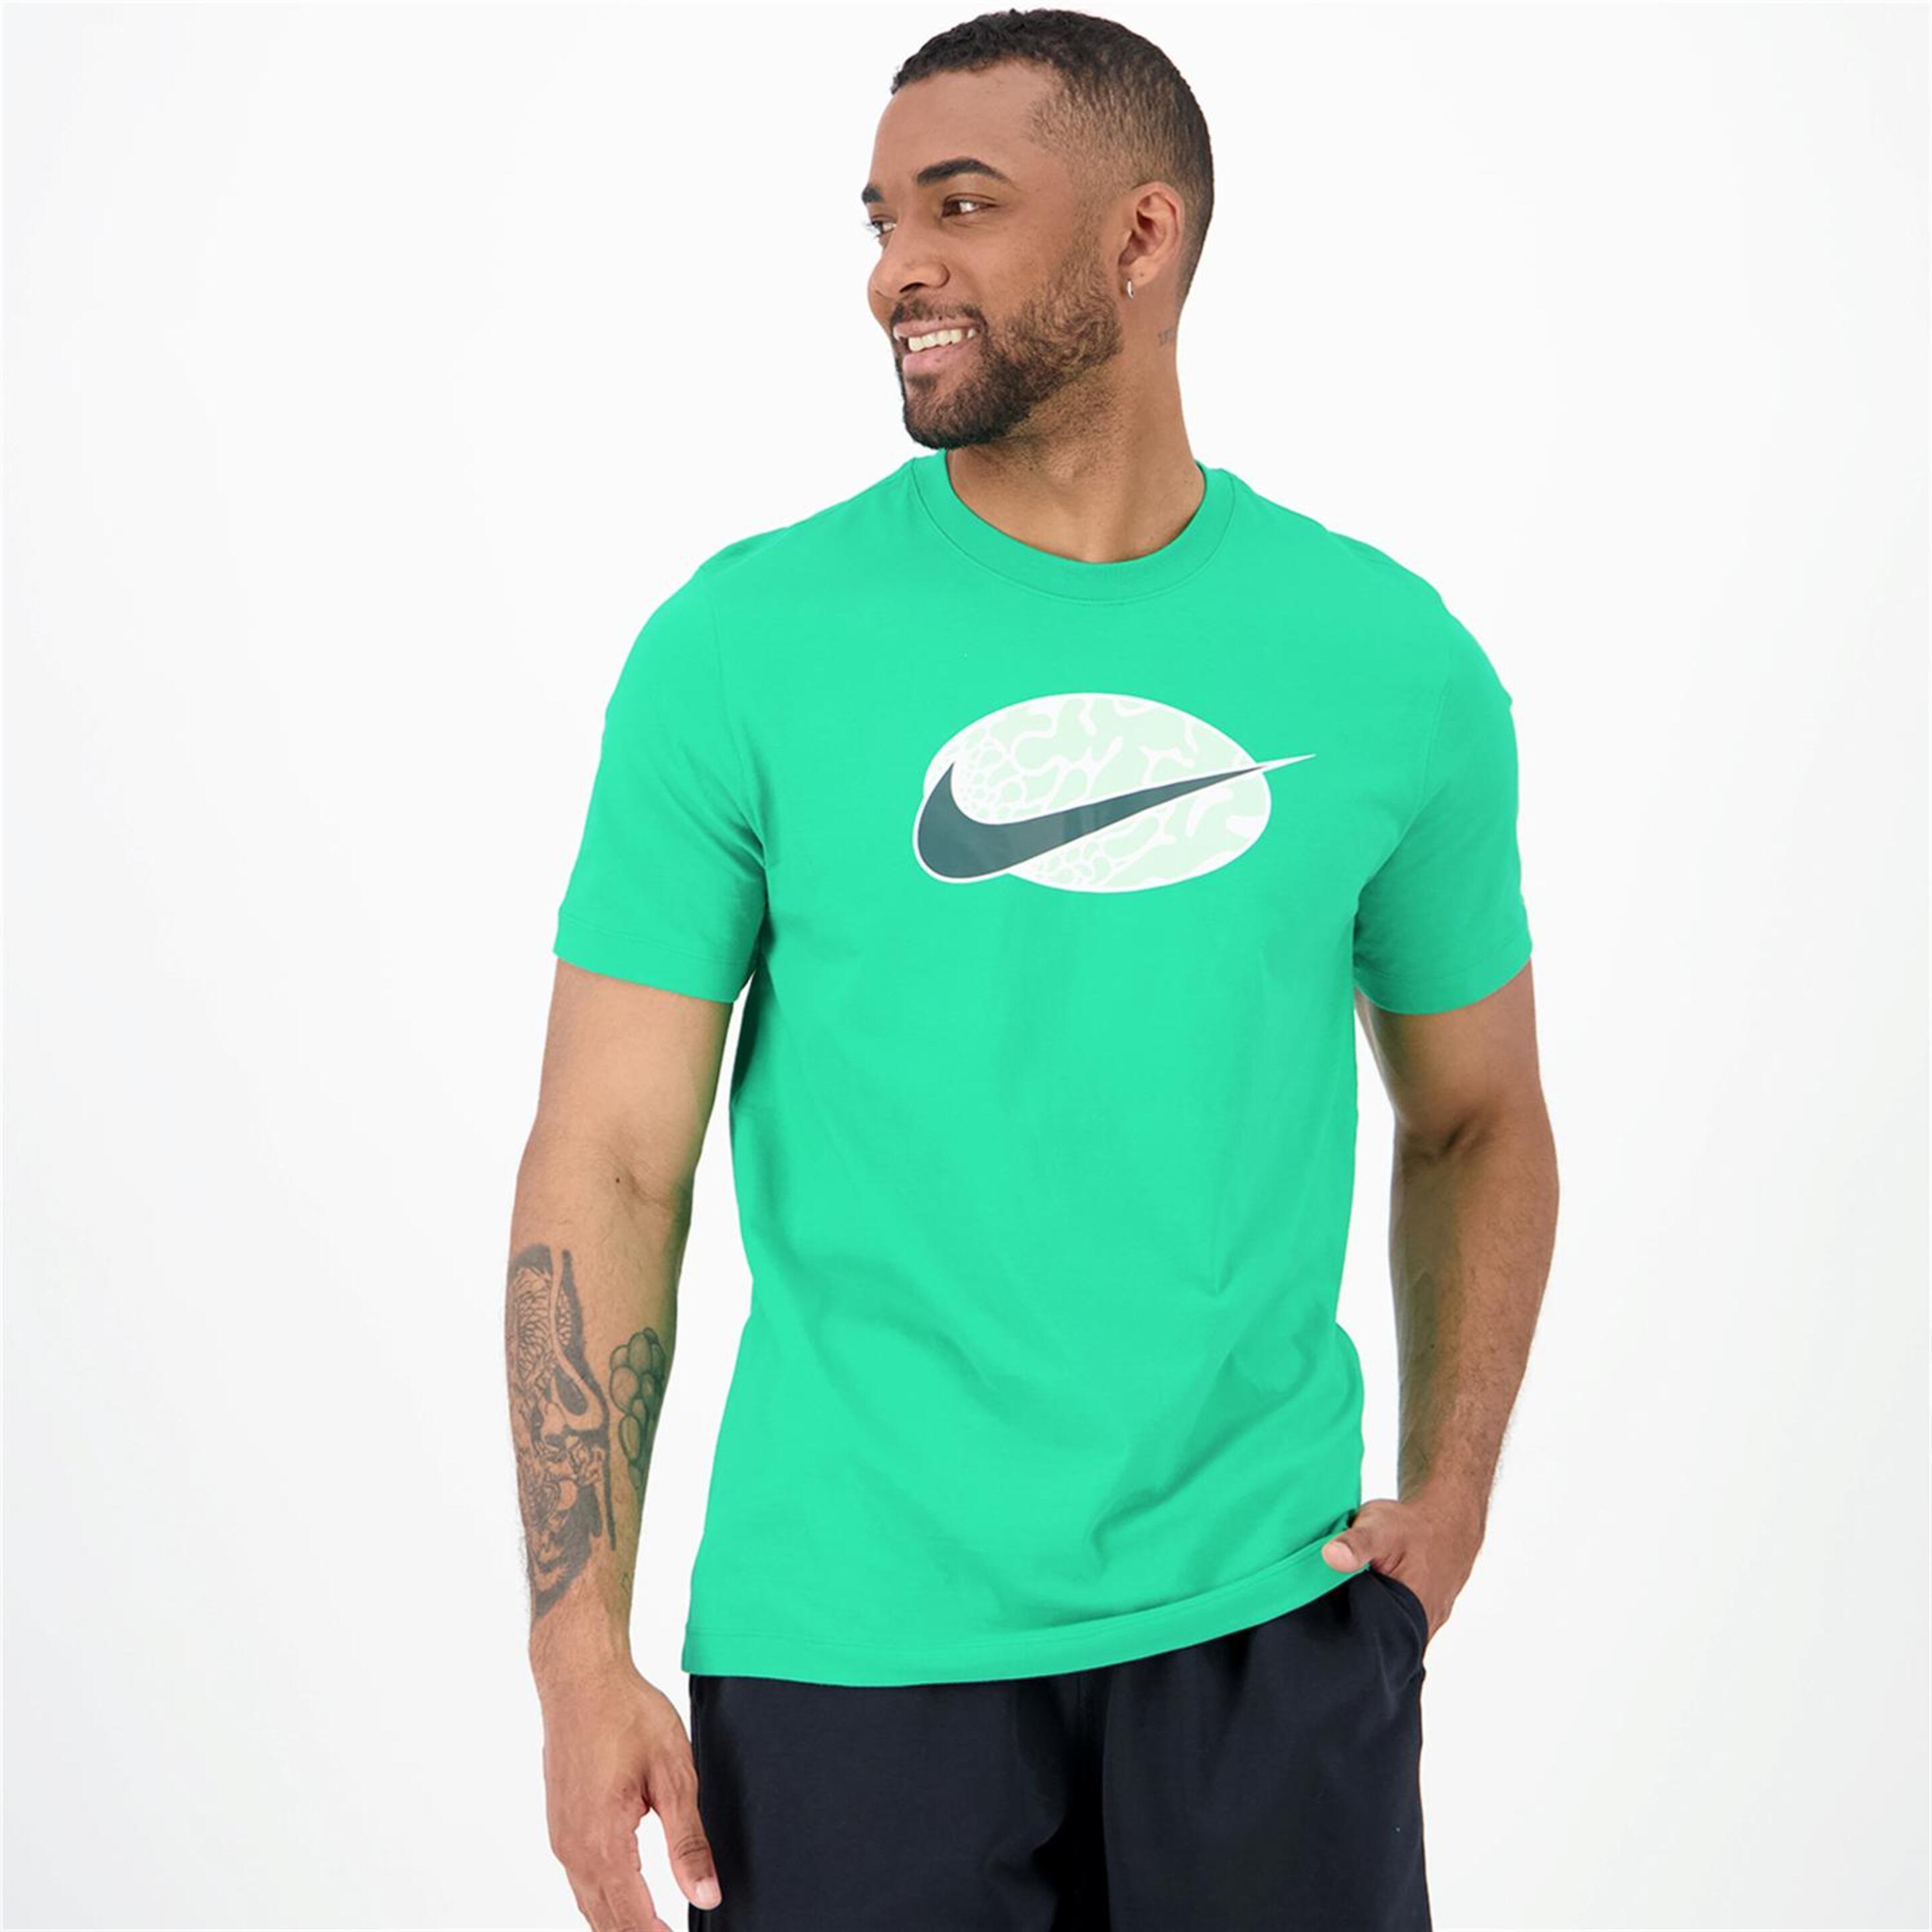 T-shirt Nike - verde - T-shirt Homem